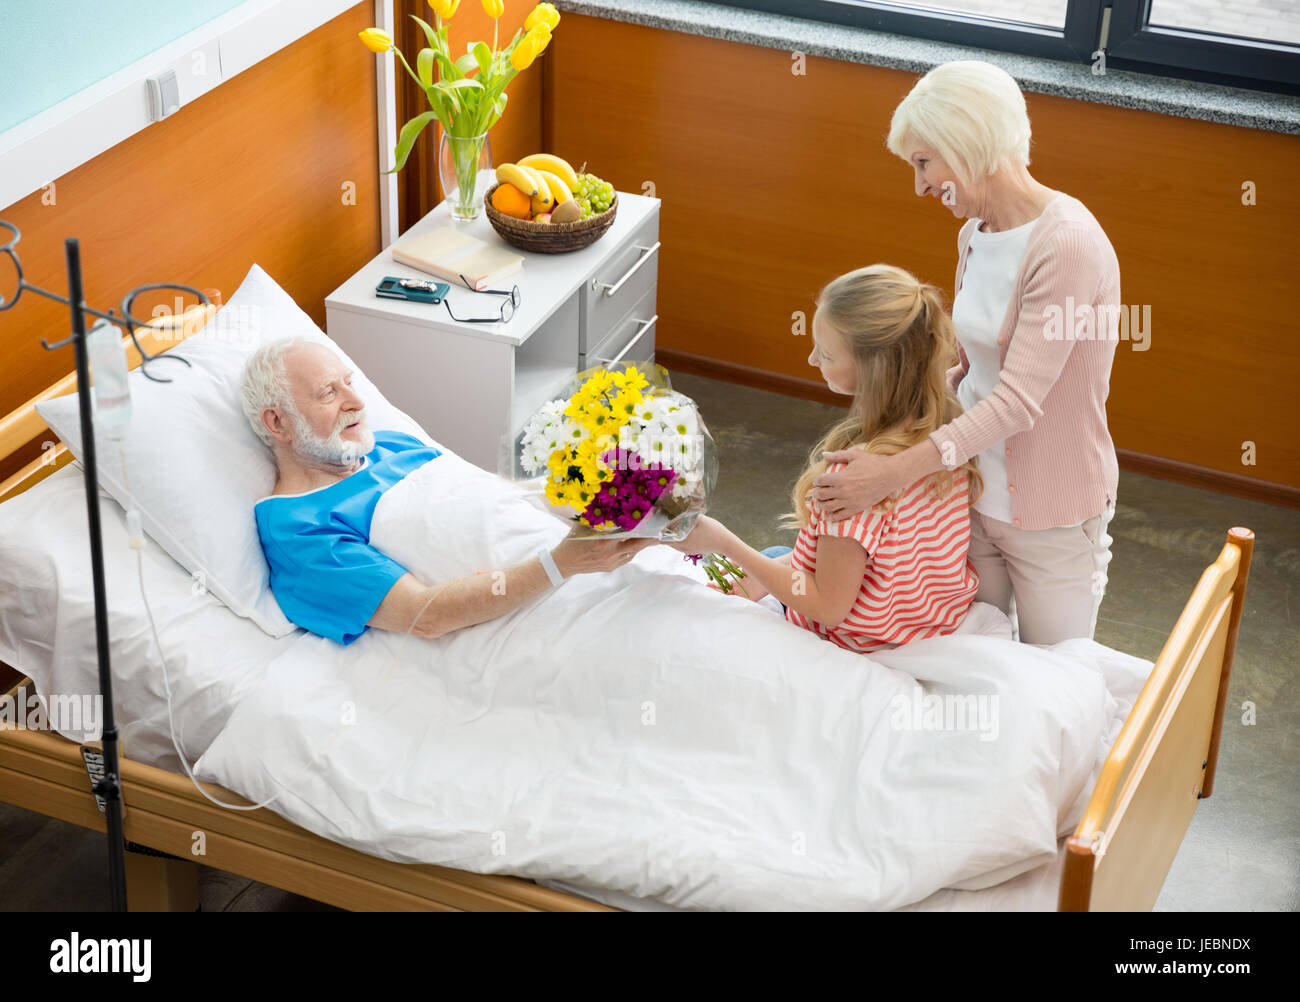 Посещение пациента родственниками. Навещать больного в больнице. В больнице пациента навещают. Посещение больного в больнице родственниками.